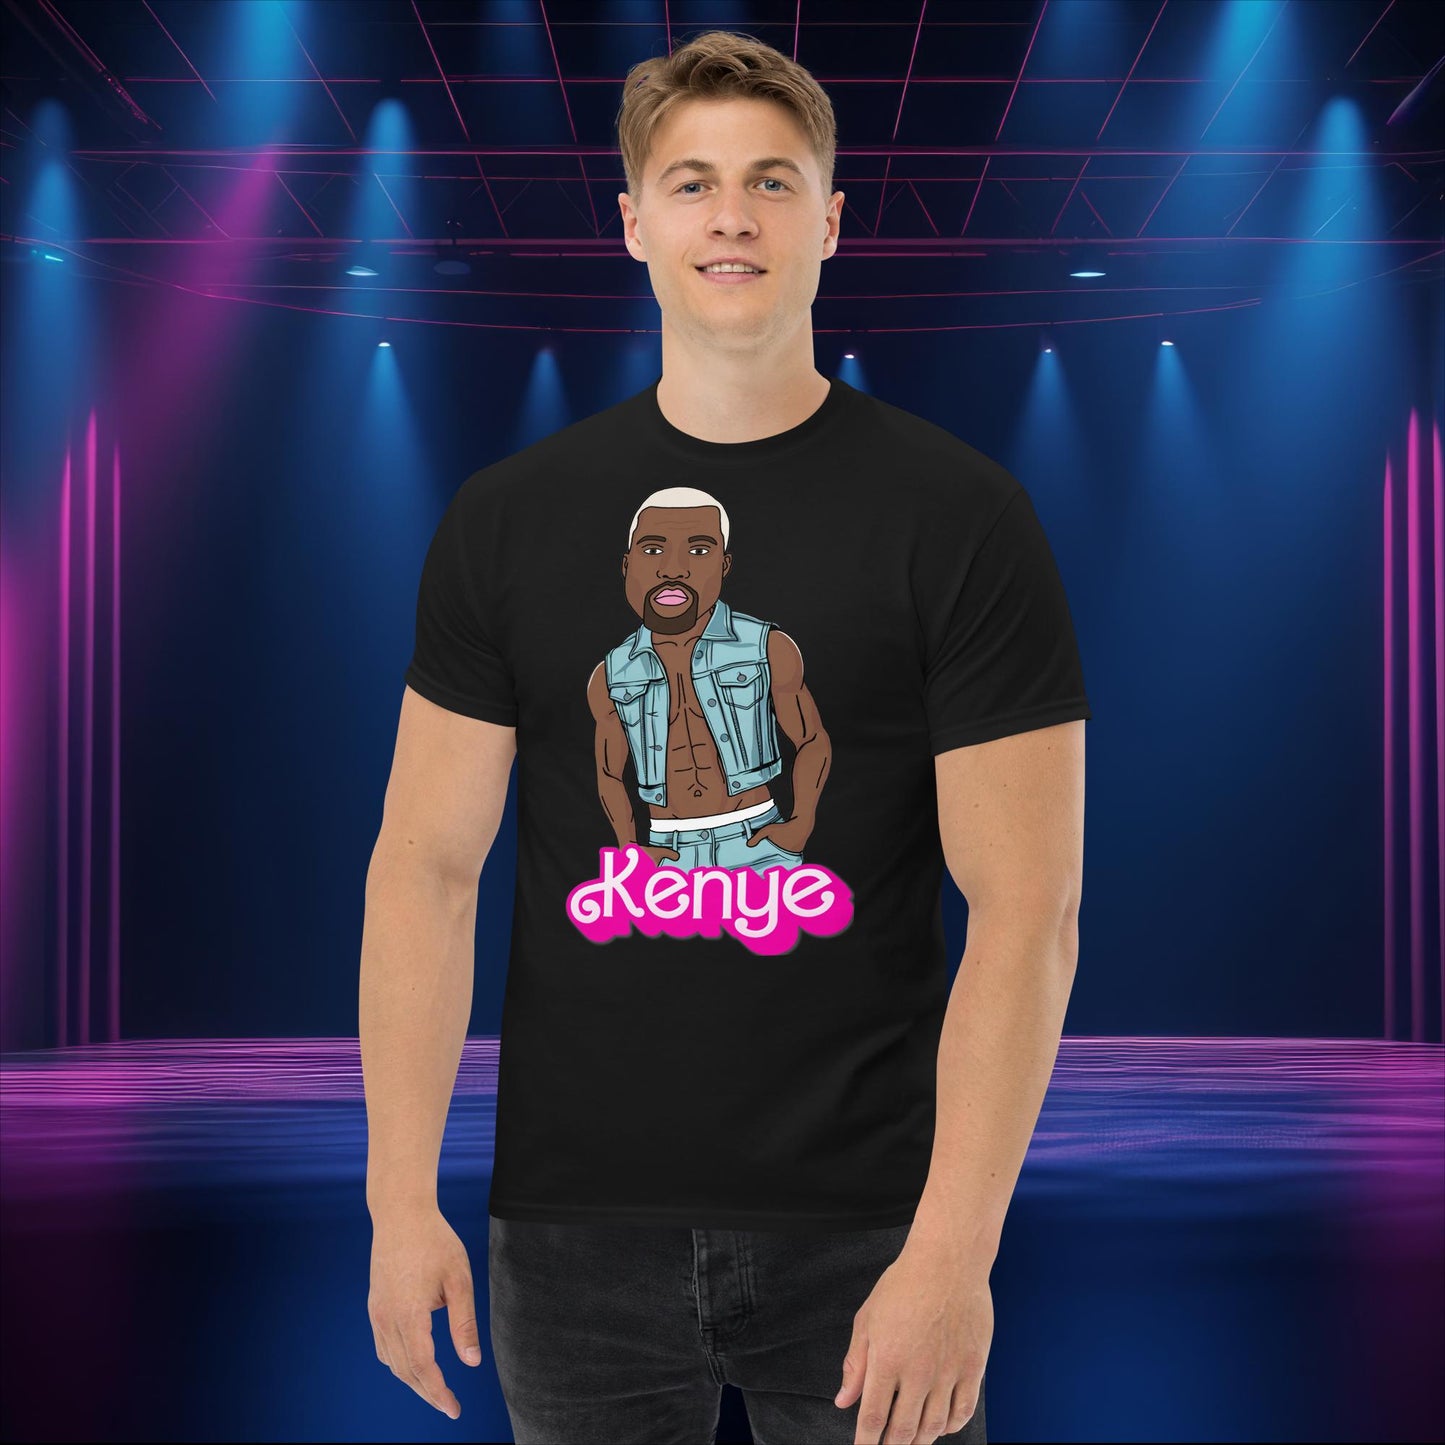 Kanye West Shirt Kanye West T-shirt Kanye Tshirt Kanye T shirt Kanye Tee Barbie Shirt Ken Shirt Ryan Gosling Shirt Barbie Gift Barbie Tshirt Next Cult Brand Barbie, Kanye West, Ken, Movies, Music, Ryan Gosling